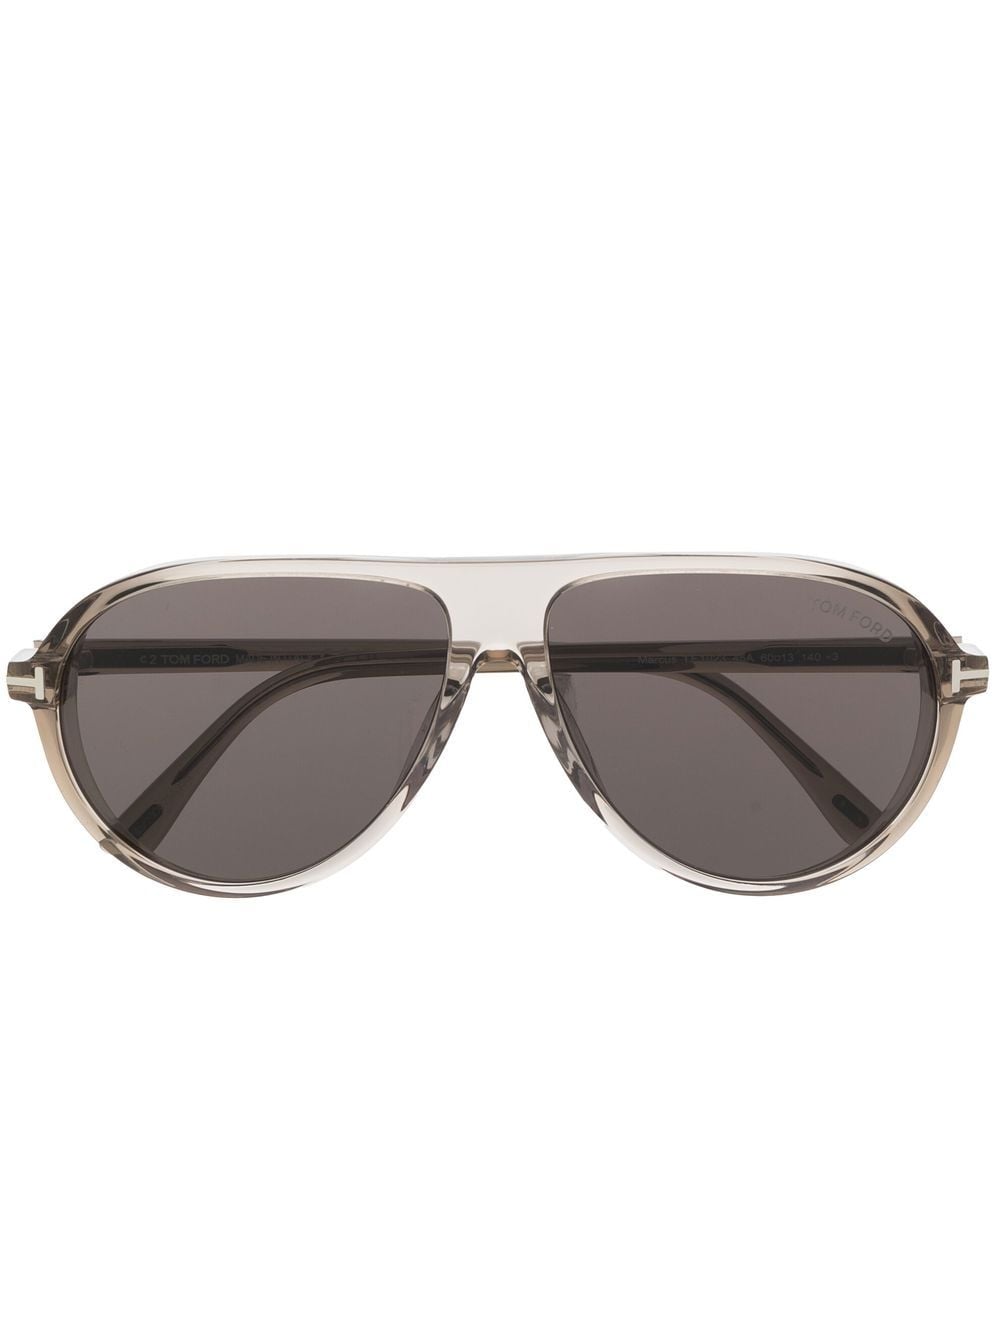 TOM FORD Eyewear pilot-frame sunglasses - Grey von TOM FORD Eyewear